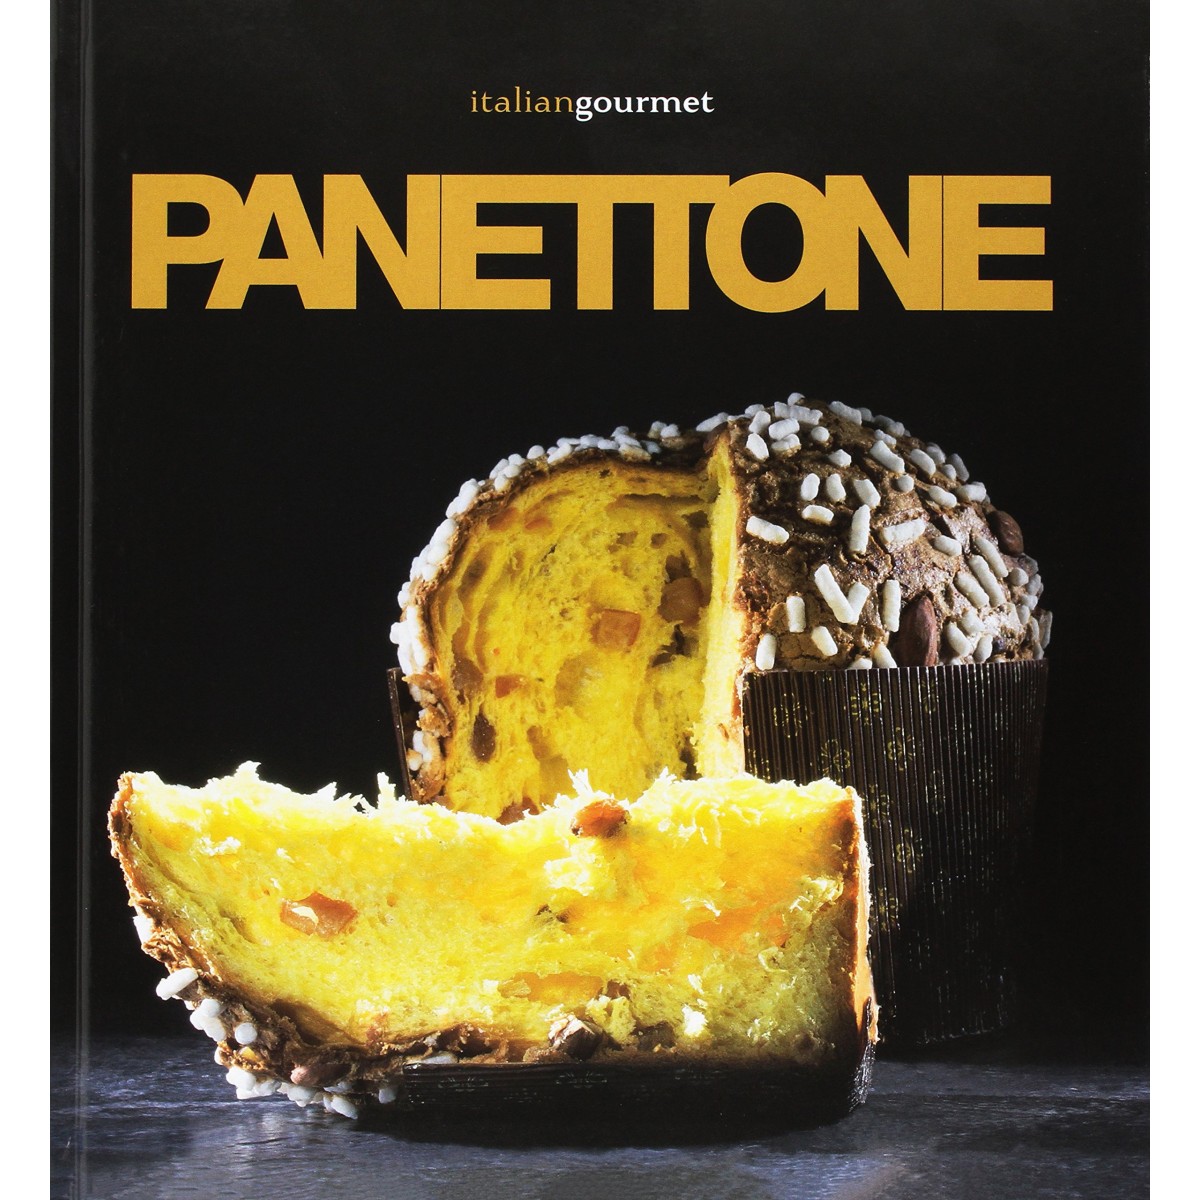 Libro ricette di Panettoni edizione illustrata, idea regalo